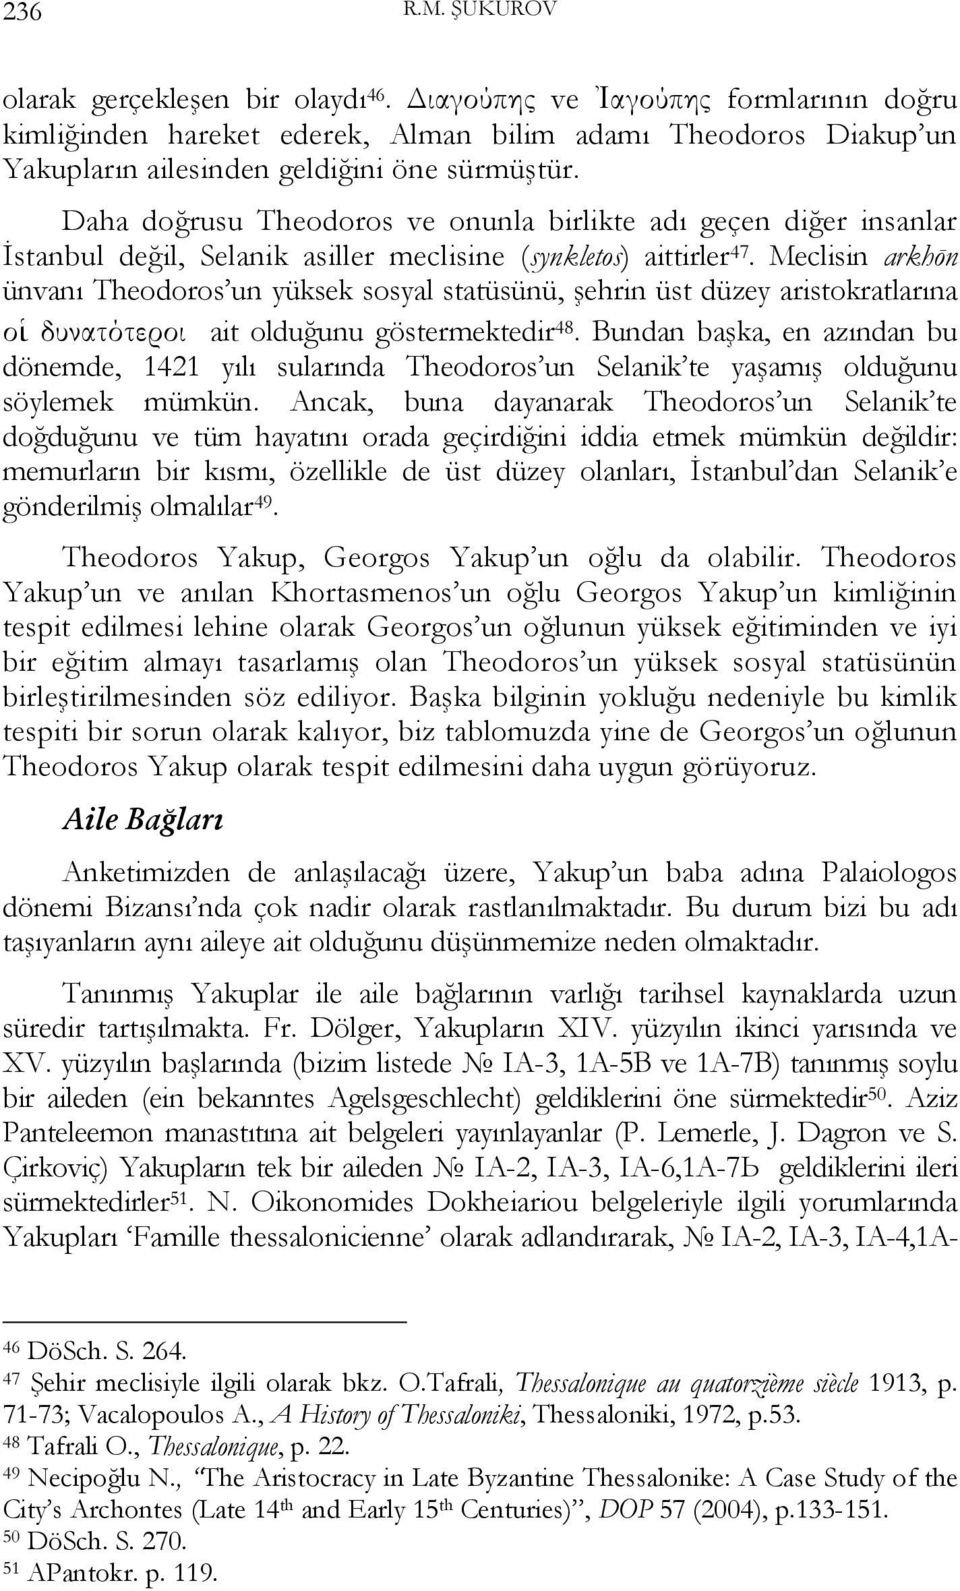 Daha doğrusu Theodoros ve onunla birlikte adı geçen diğer insanlar İstanbul değil, Selanik аsiller meclisine (synkletos) aittirler 47.